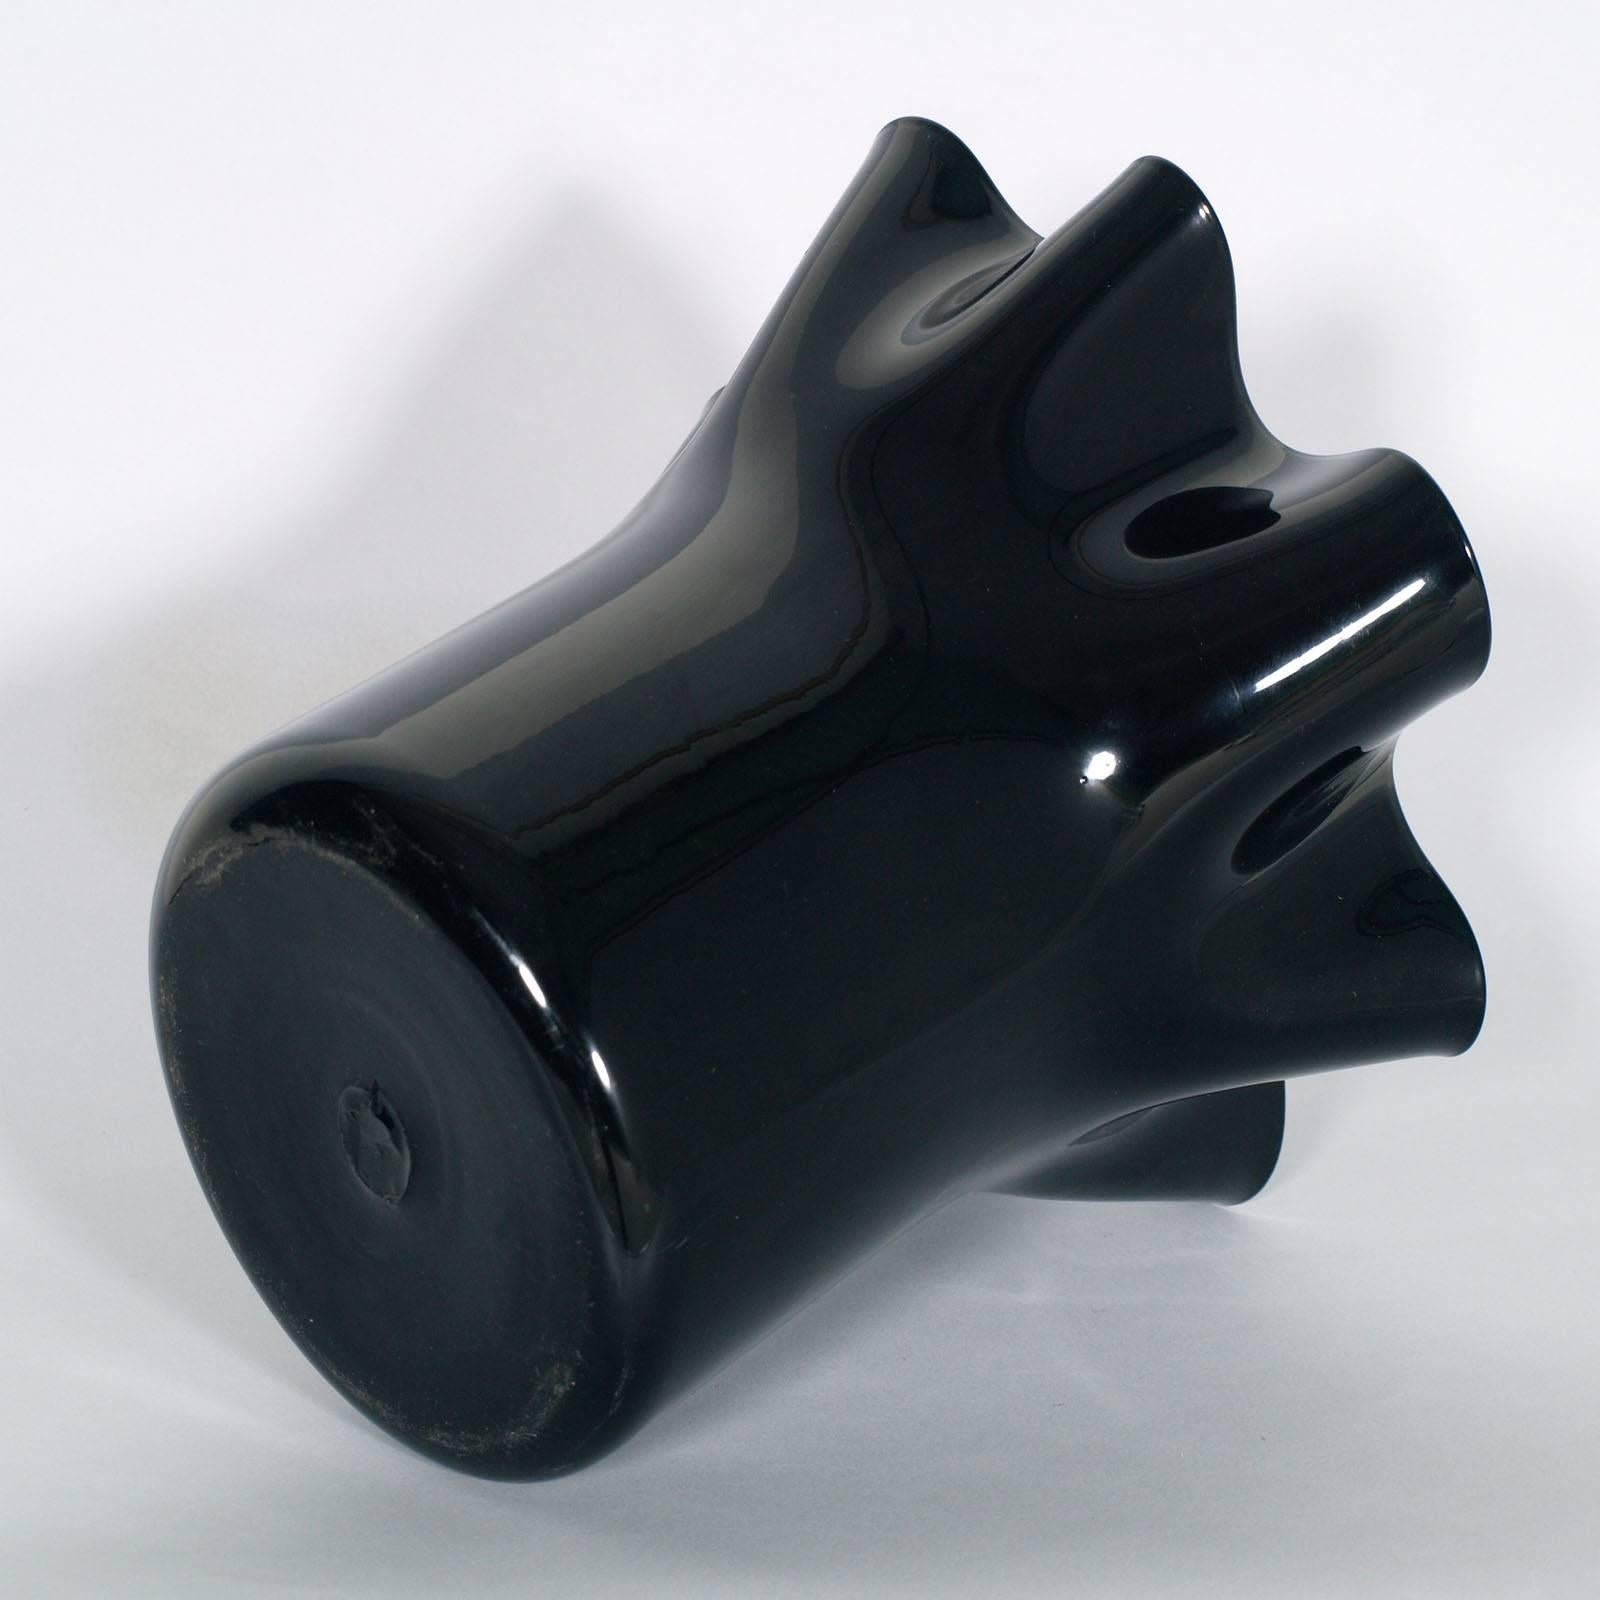 Schwarze Vase im Stil von Sergio Asti für Venini aus geblasenem Muranoglas, ca. 1960er Jahre.

Messen Sie cm: H 28 Durchmesser 30.